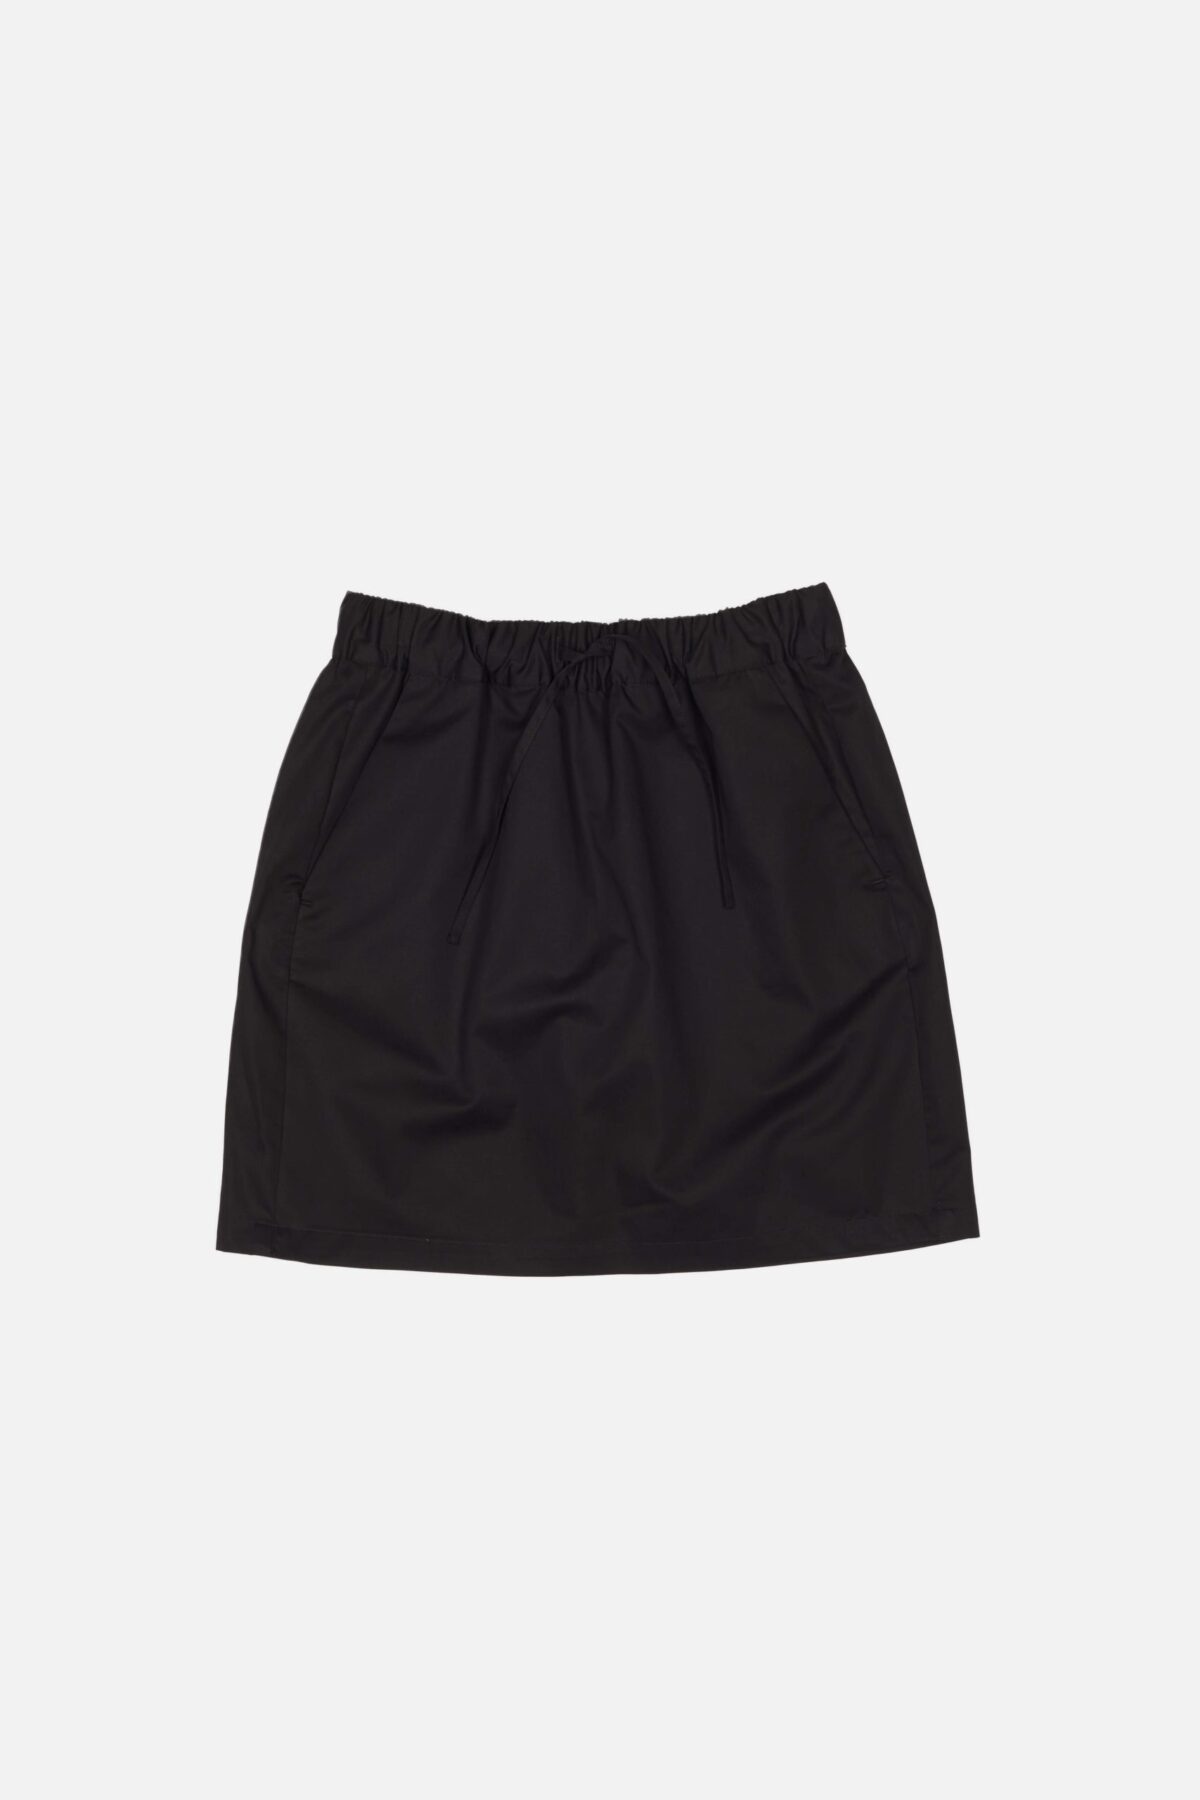 Marseille Cotton Women's Skirt